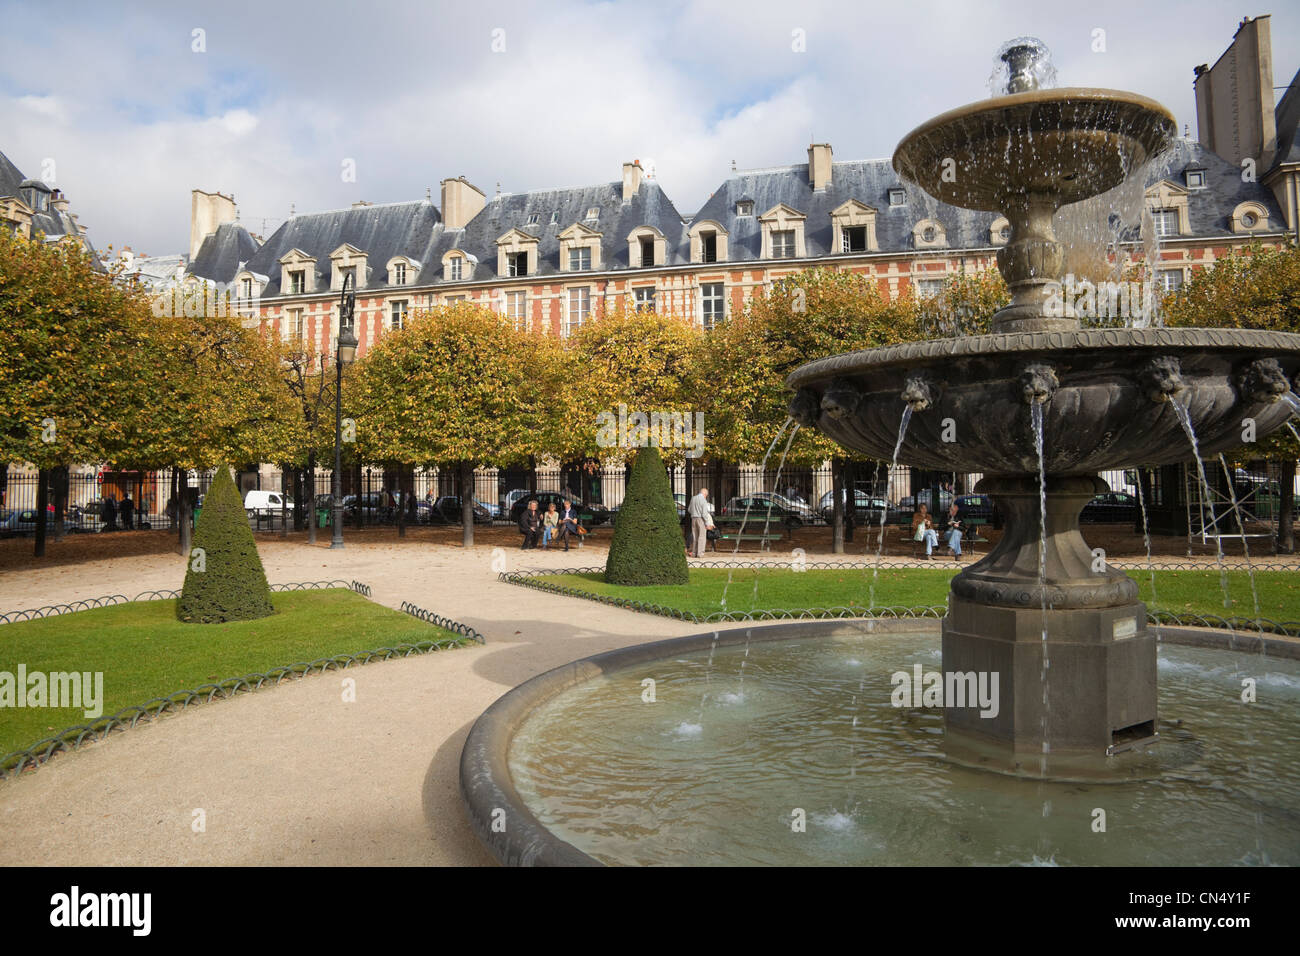 Fontaine de la Place de Louis XIII jardin, Paris, France Banque D'Images